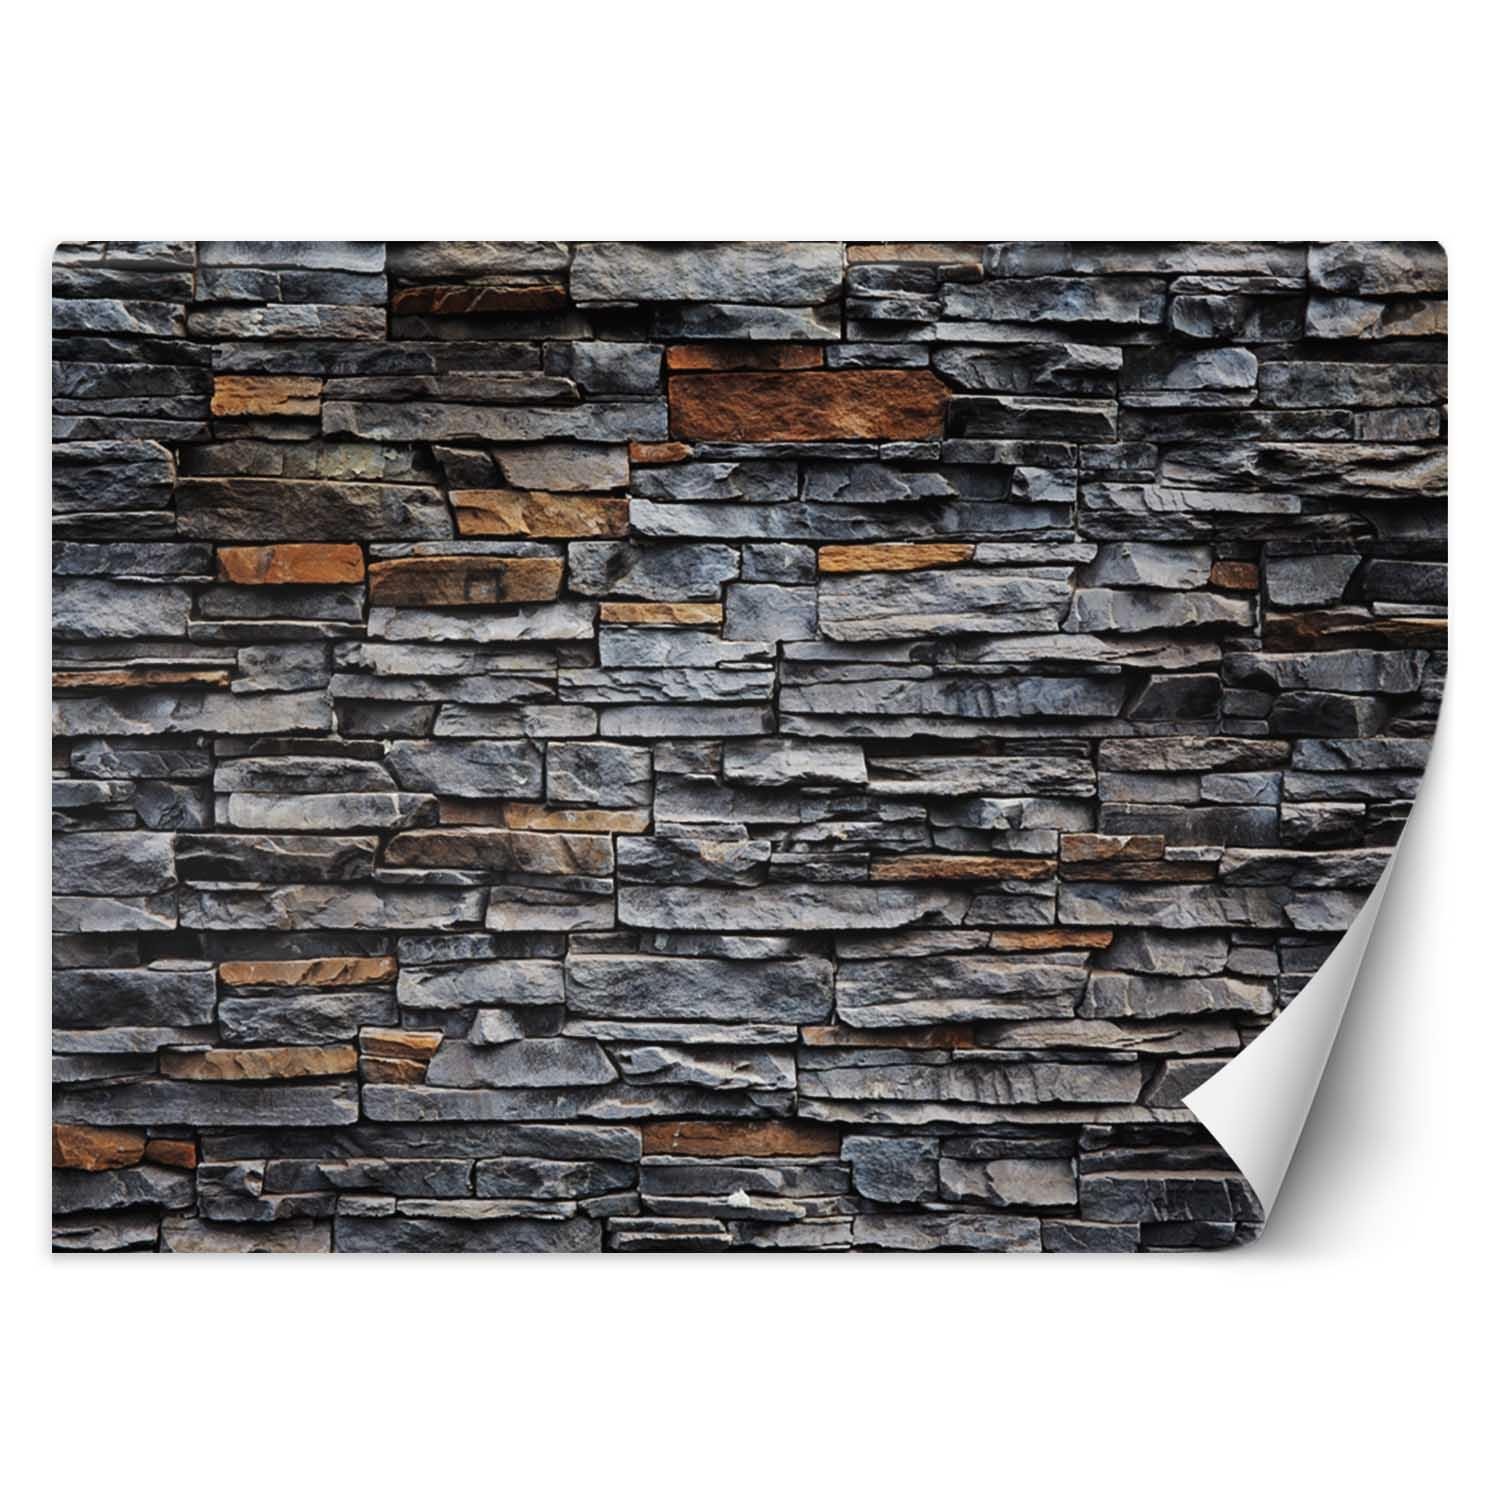 Trend24 – Behang – Stenen Muur Met Zandsteen – Behangpapier – Behang Woonkamer – Fotobehang – 400×280 cm – Incl. behanglijm